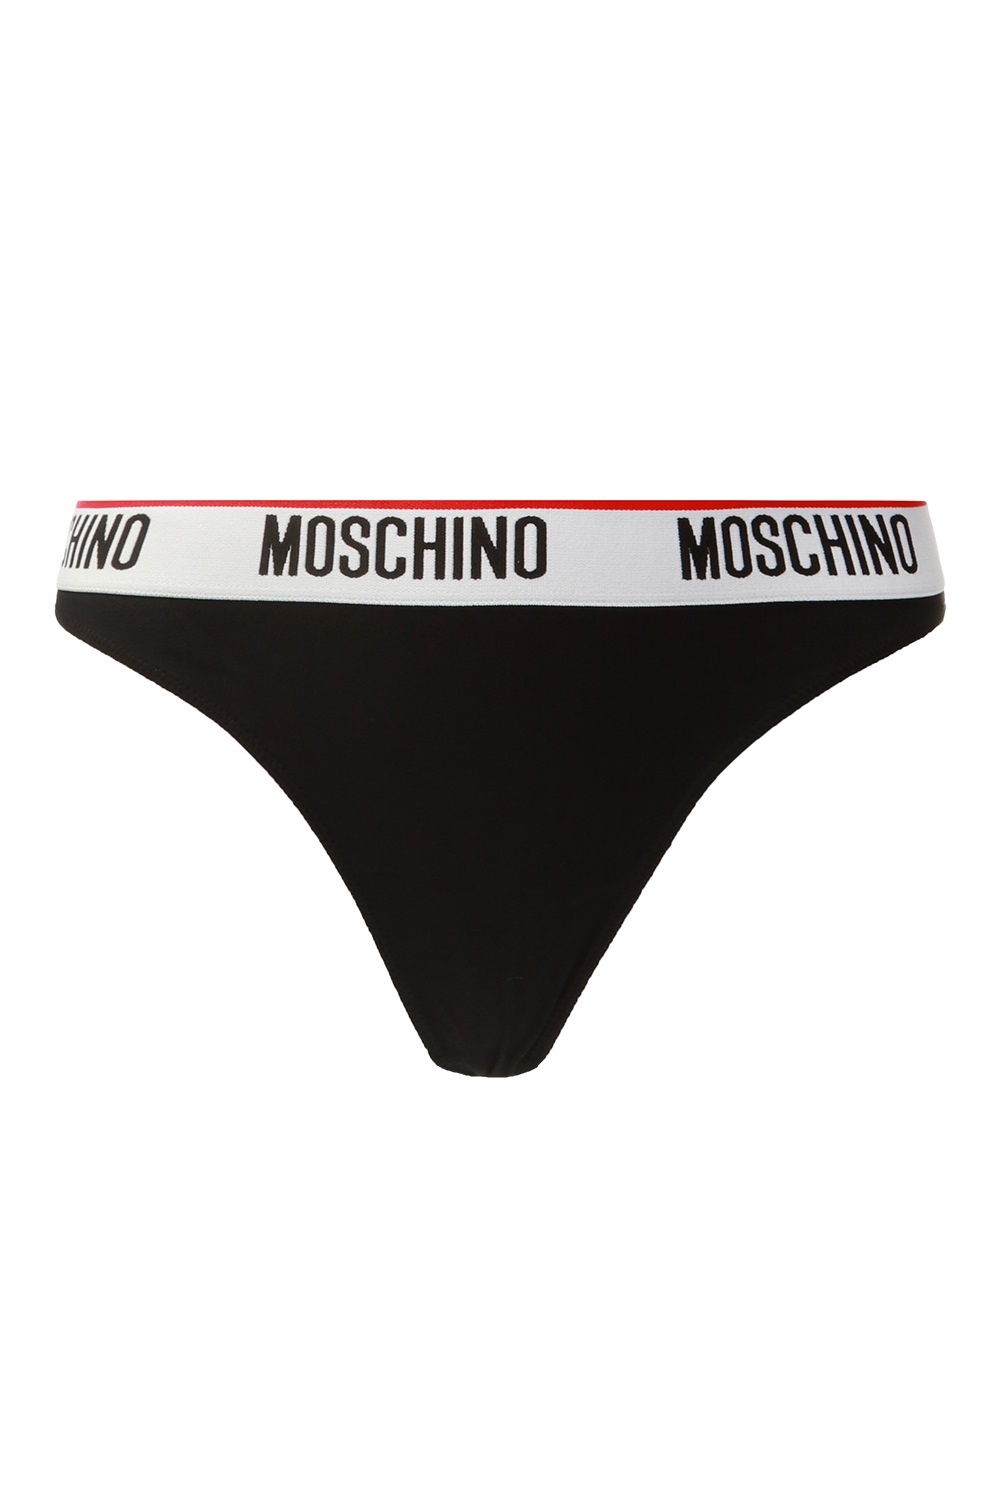 moschino thong underwear